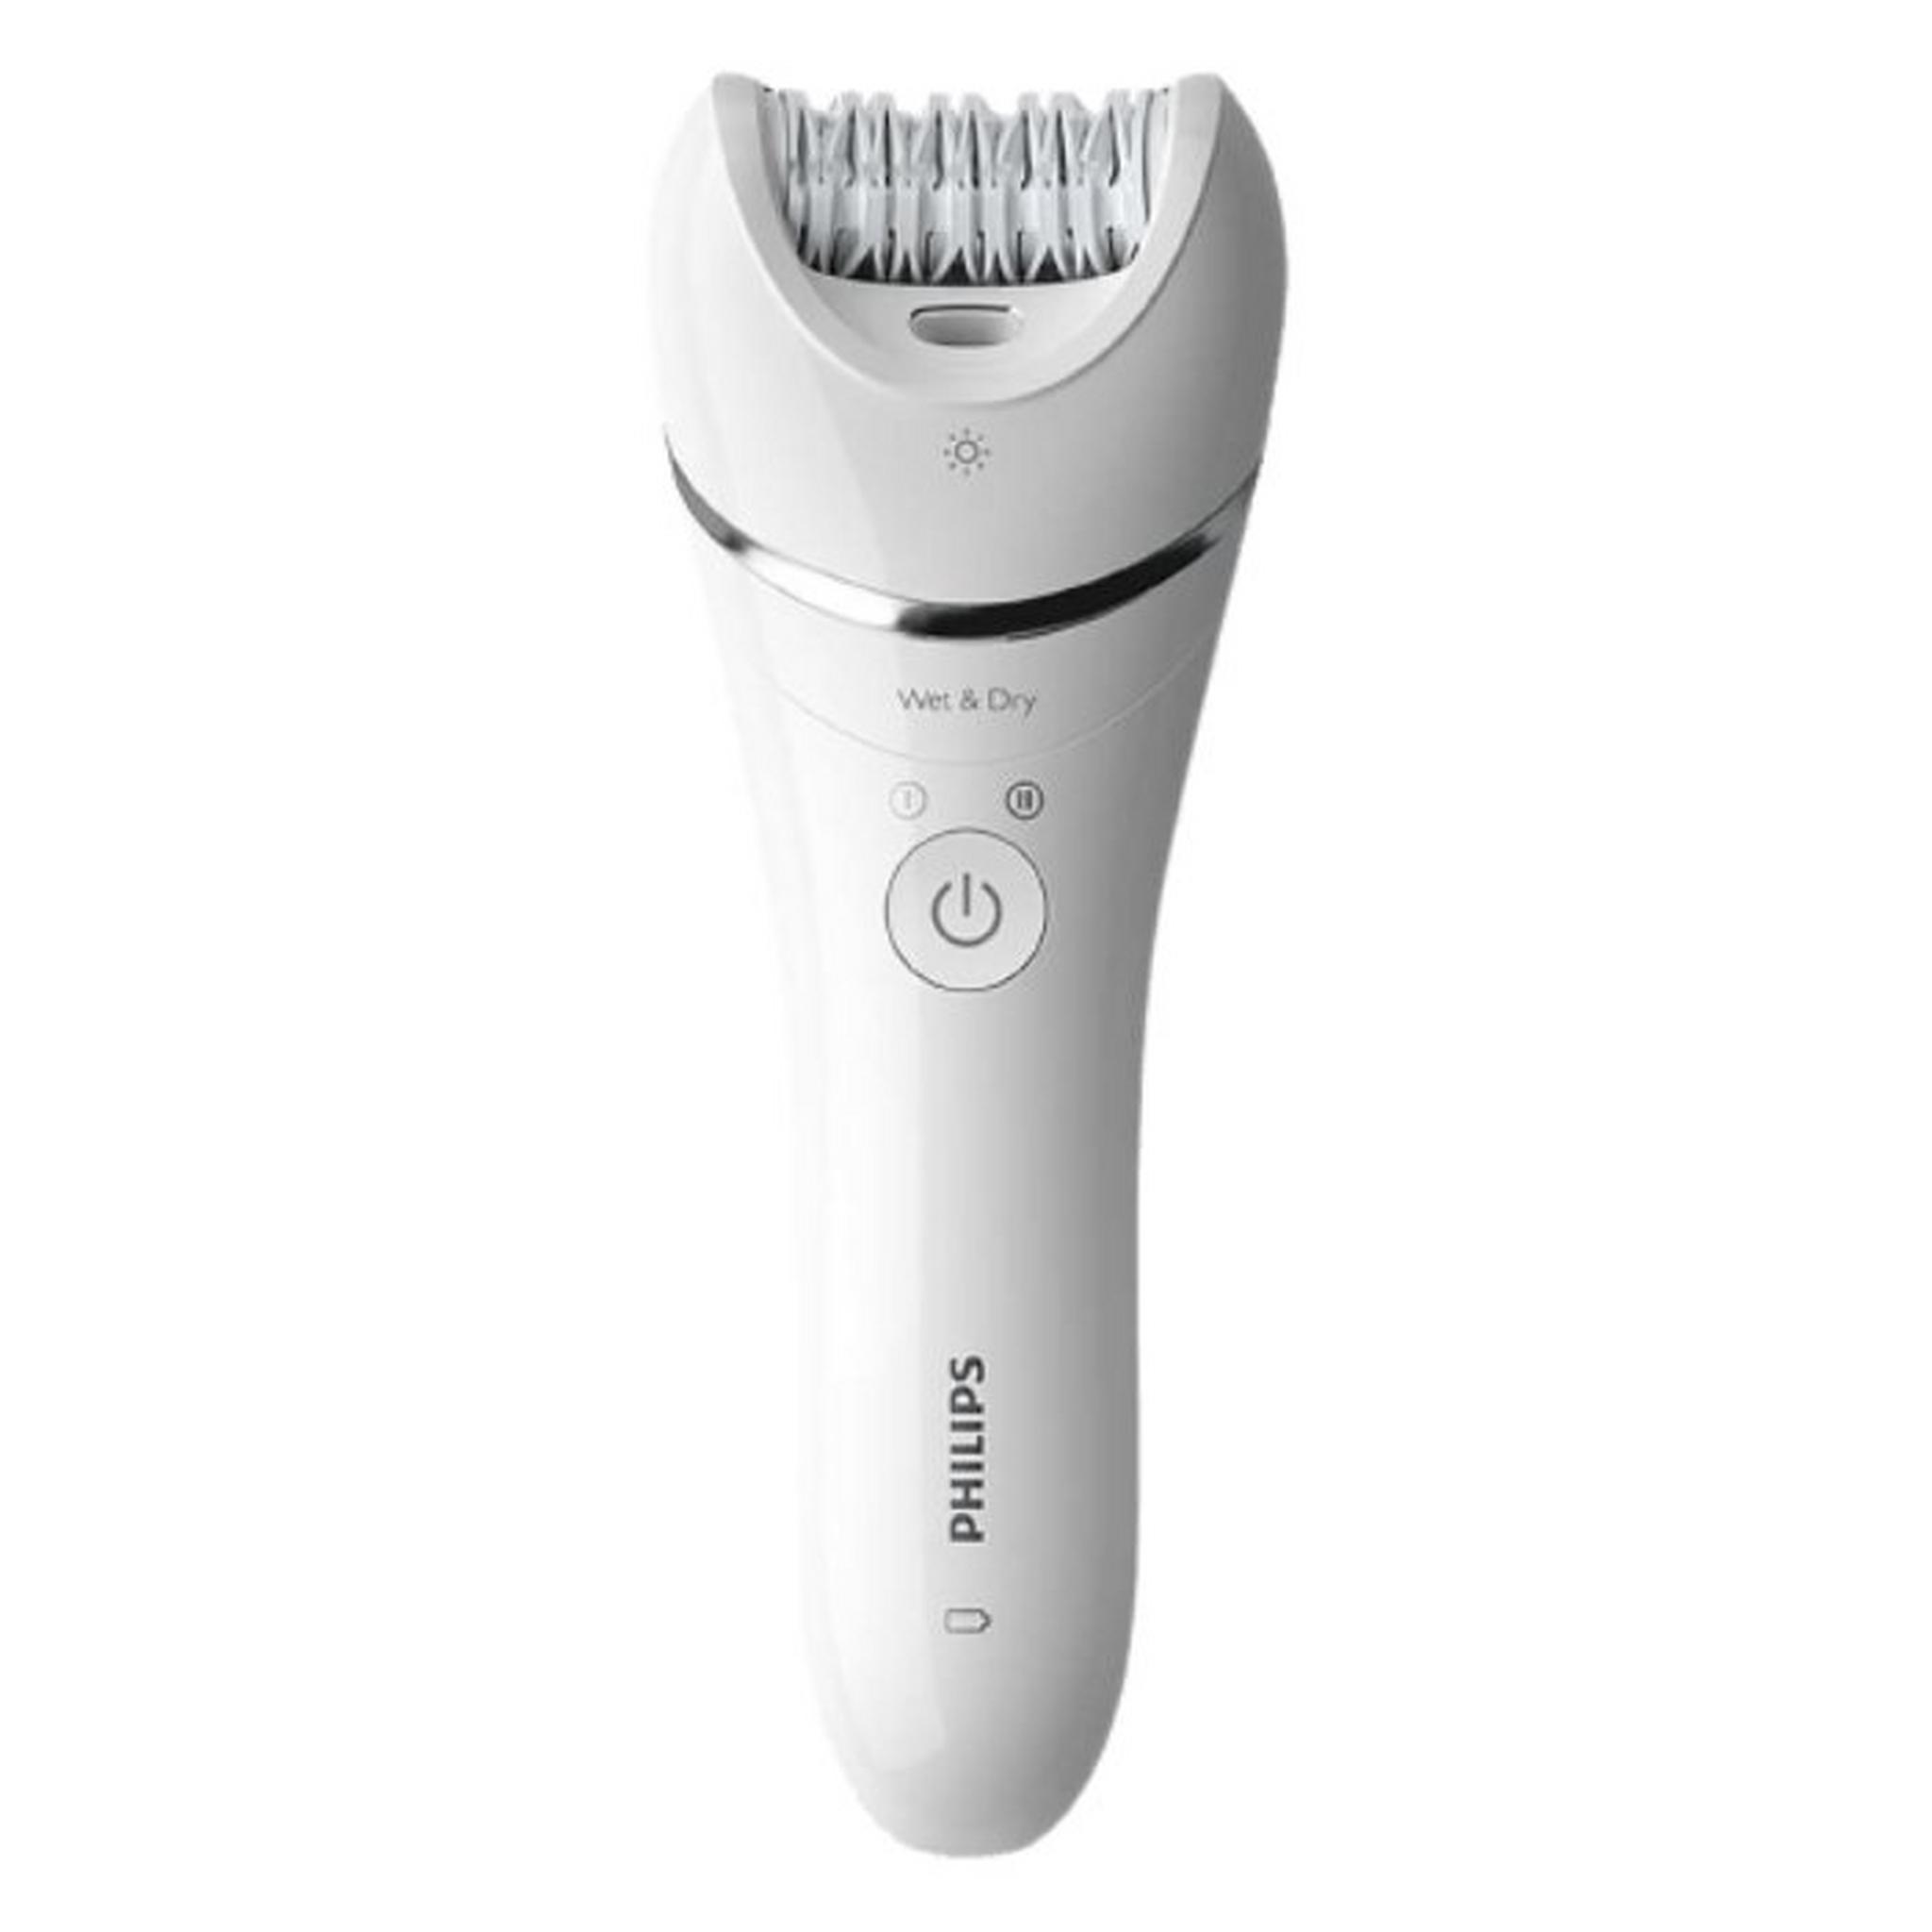 ماكينة إزالة الشعر اللاسلكية من فيليبس سلسلة 8000 للاستخدام الجاف والرطب مع 5 ملحقات، BRE710/01 - أبيض